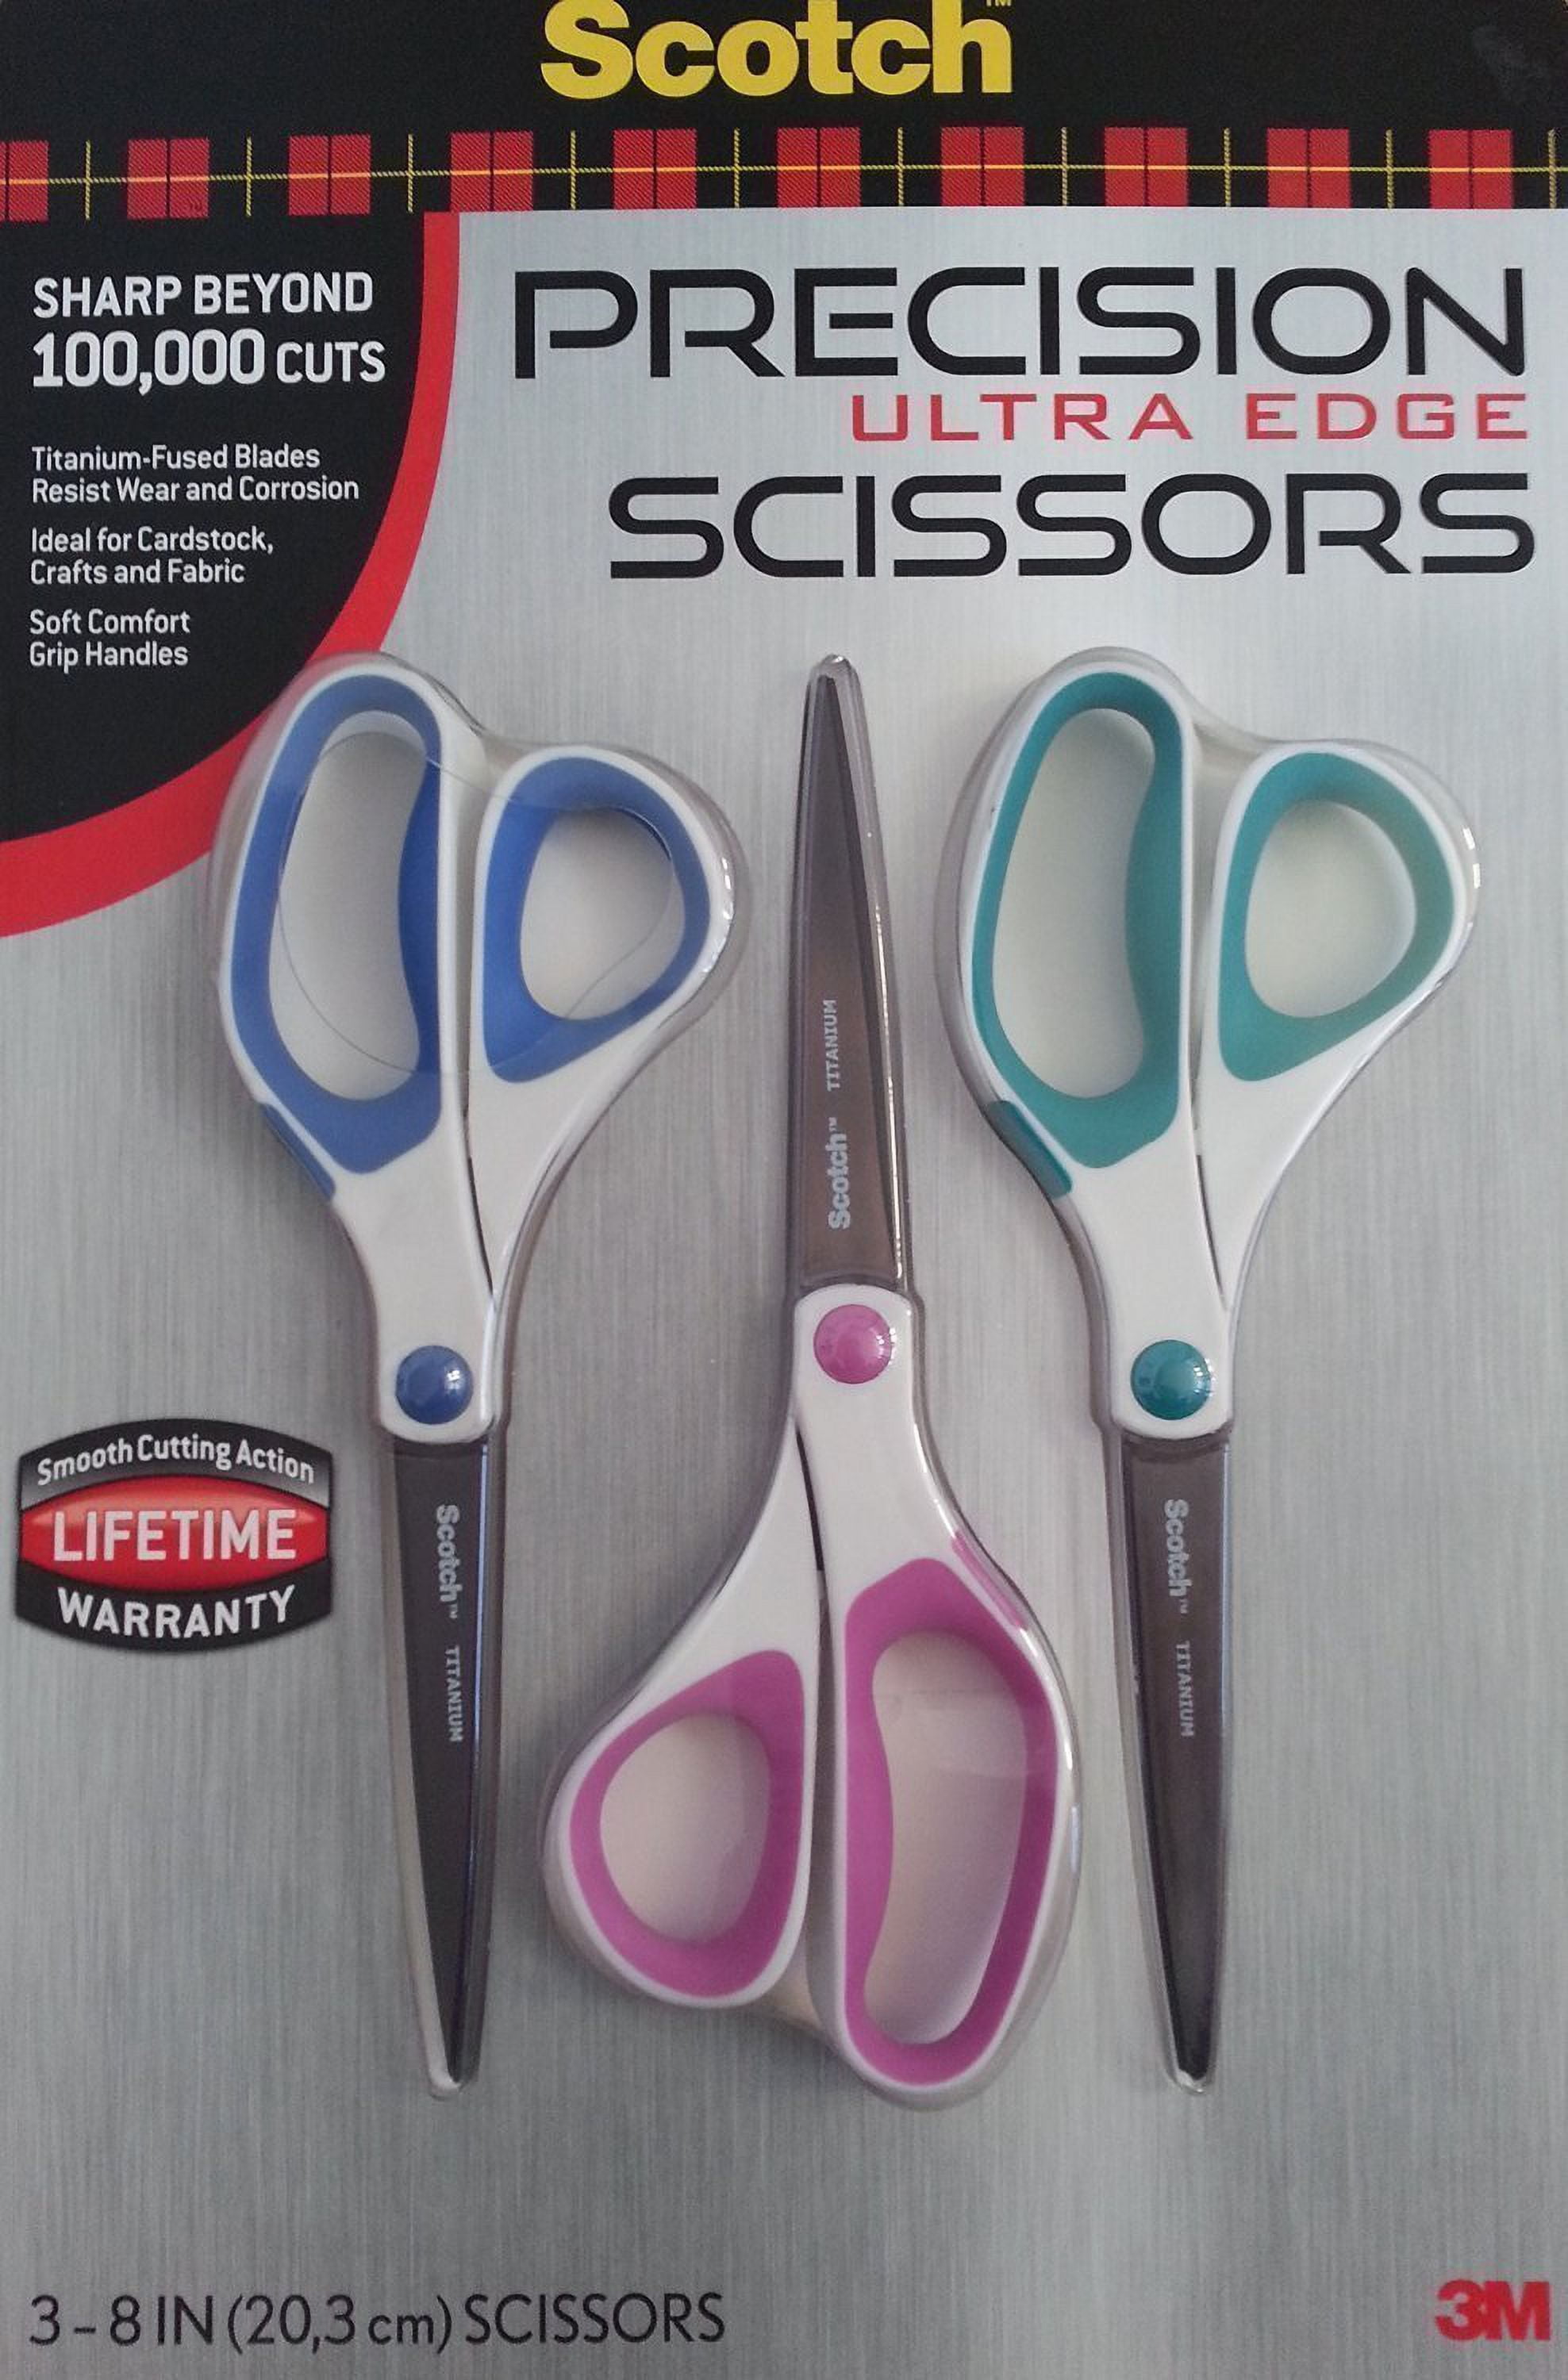 Scotch Precision Ultra Edge Scissors, 3 Pack 